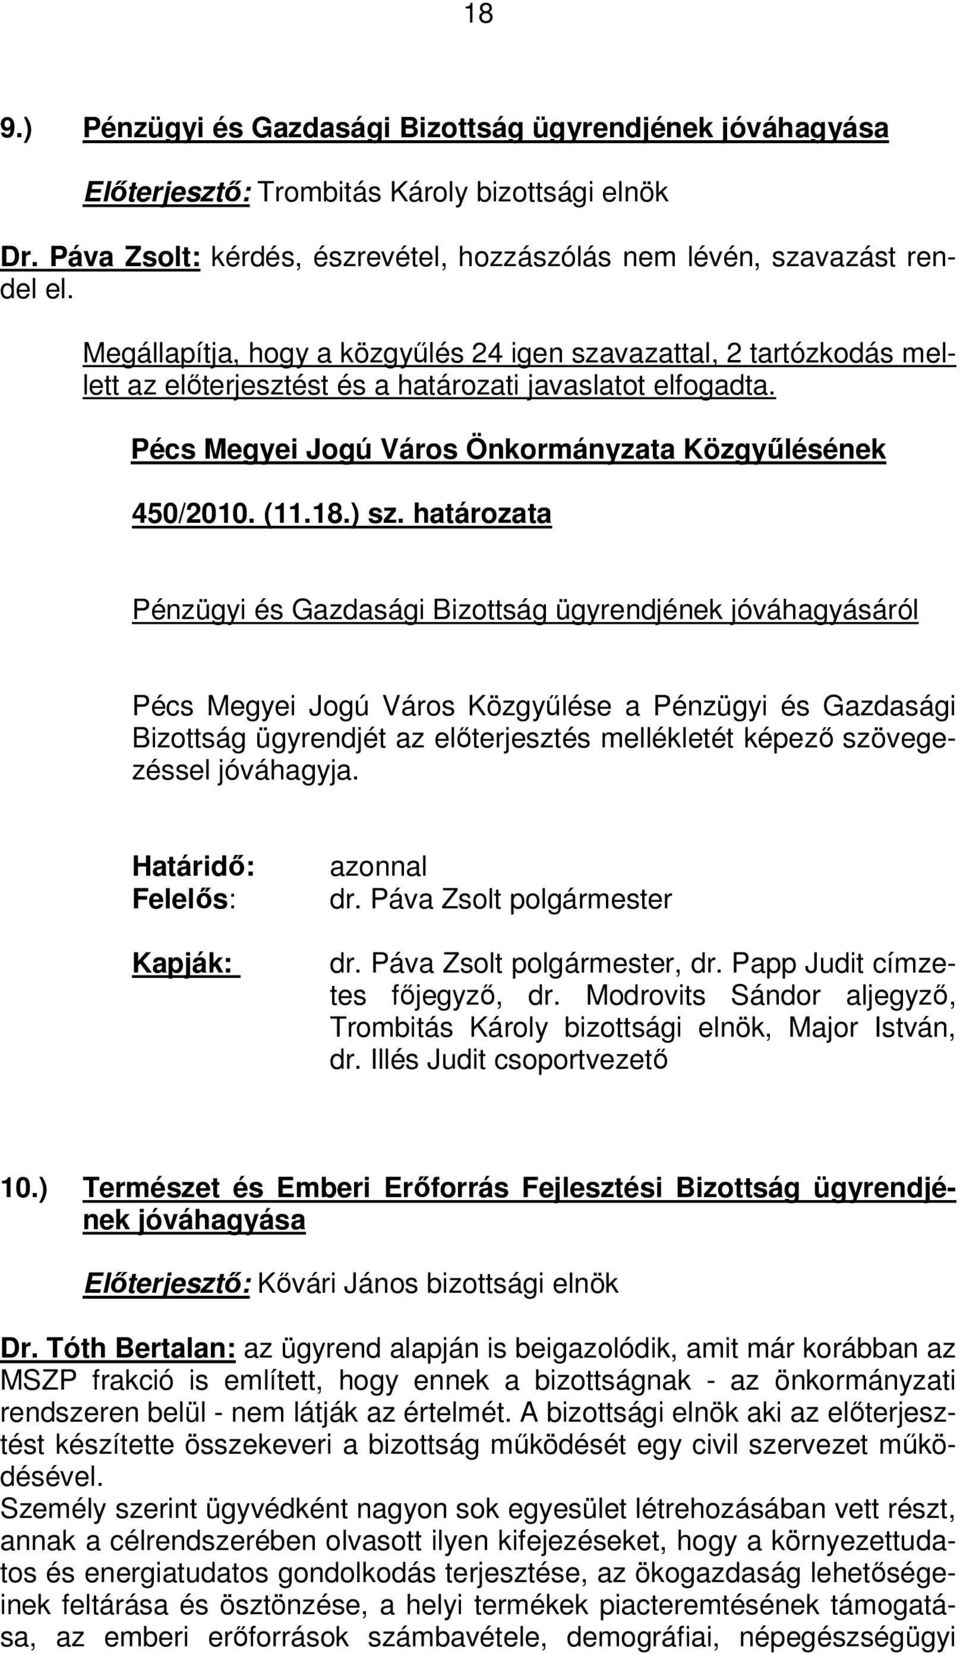 ) sz. határozata Pénzügyi és Gazdasági Bizottság ügyrendjének jóváhagyásáról Pécs Megyei Jogú Város Közgyűlése a Pénzügyi és Gazdasági Bizottság ügyrendjét az előterjesztés mellékletét képező